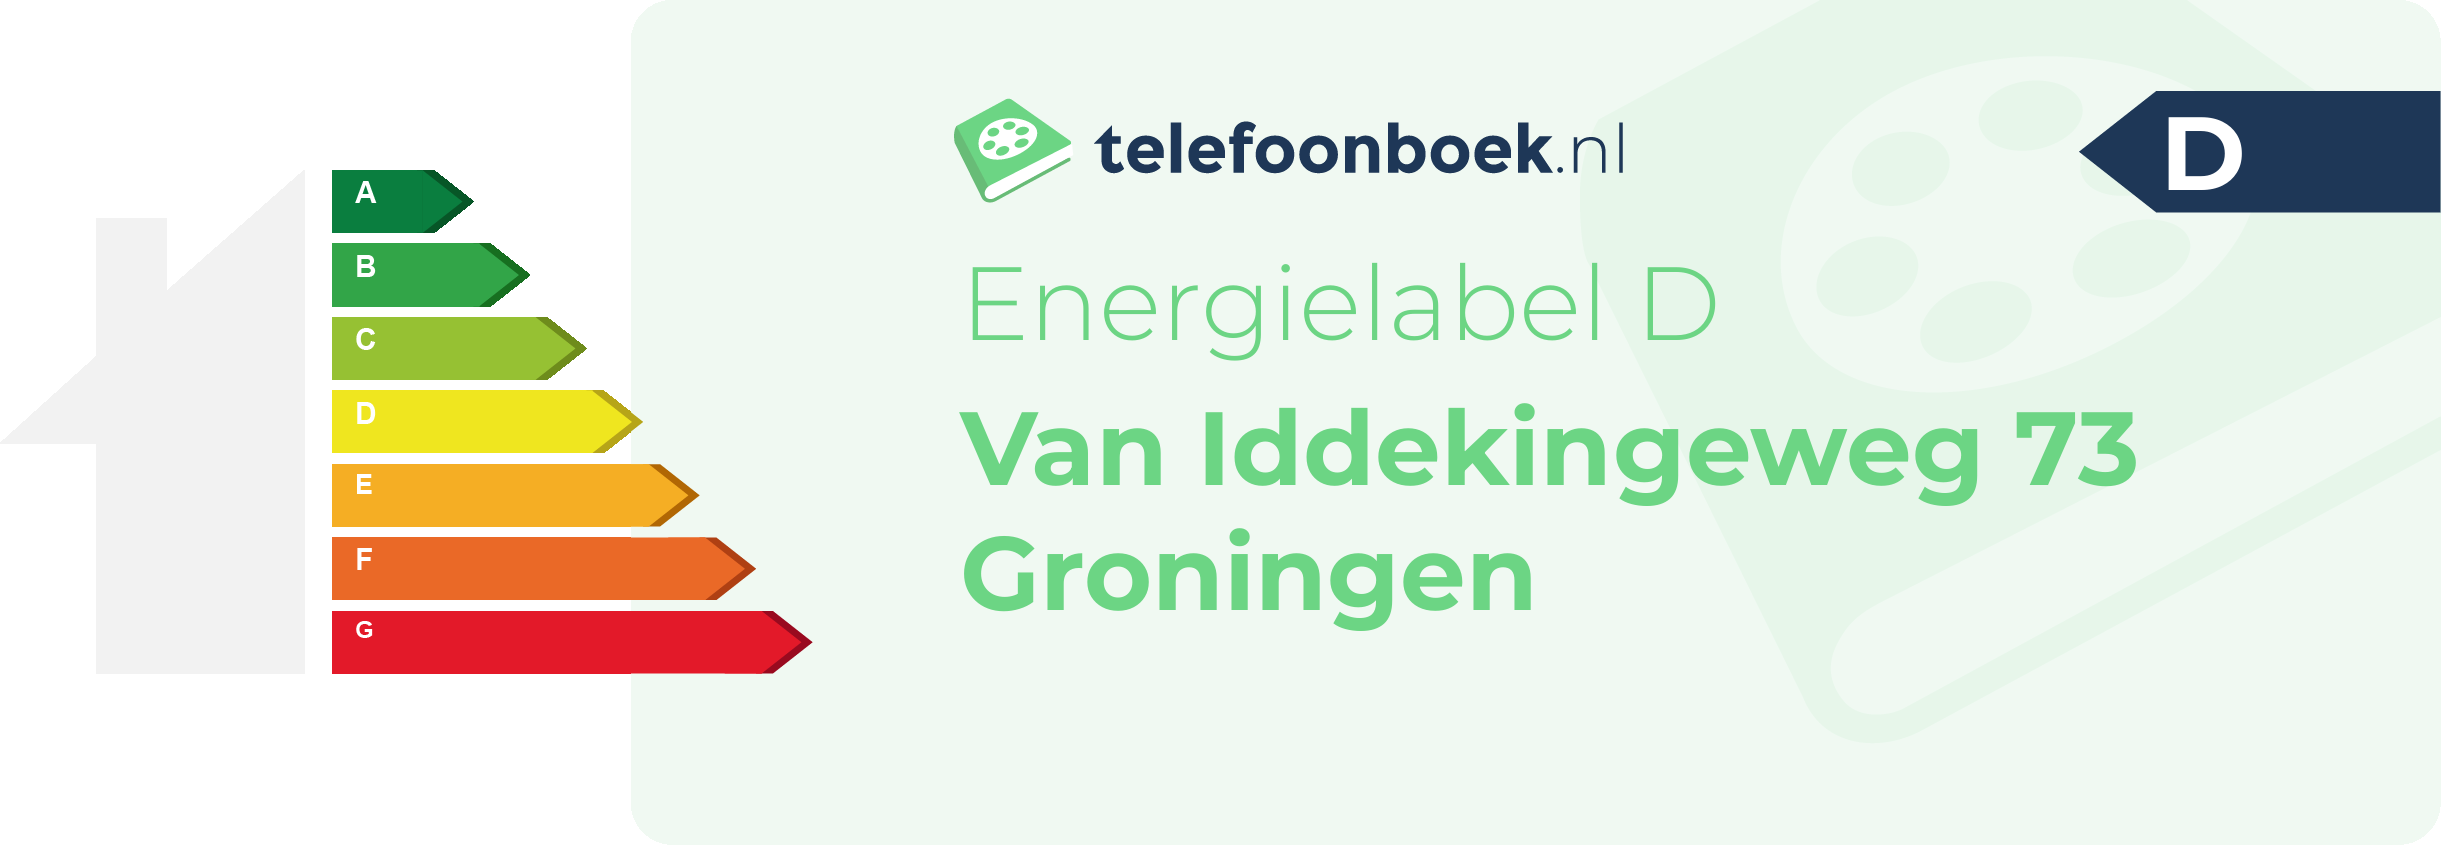 Energielabel Van Iddekingeweg 73 Groningen